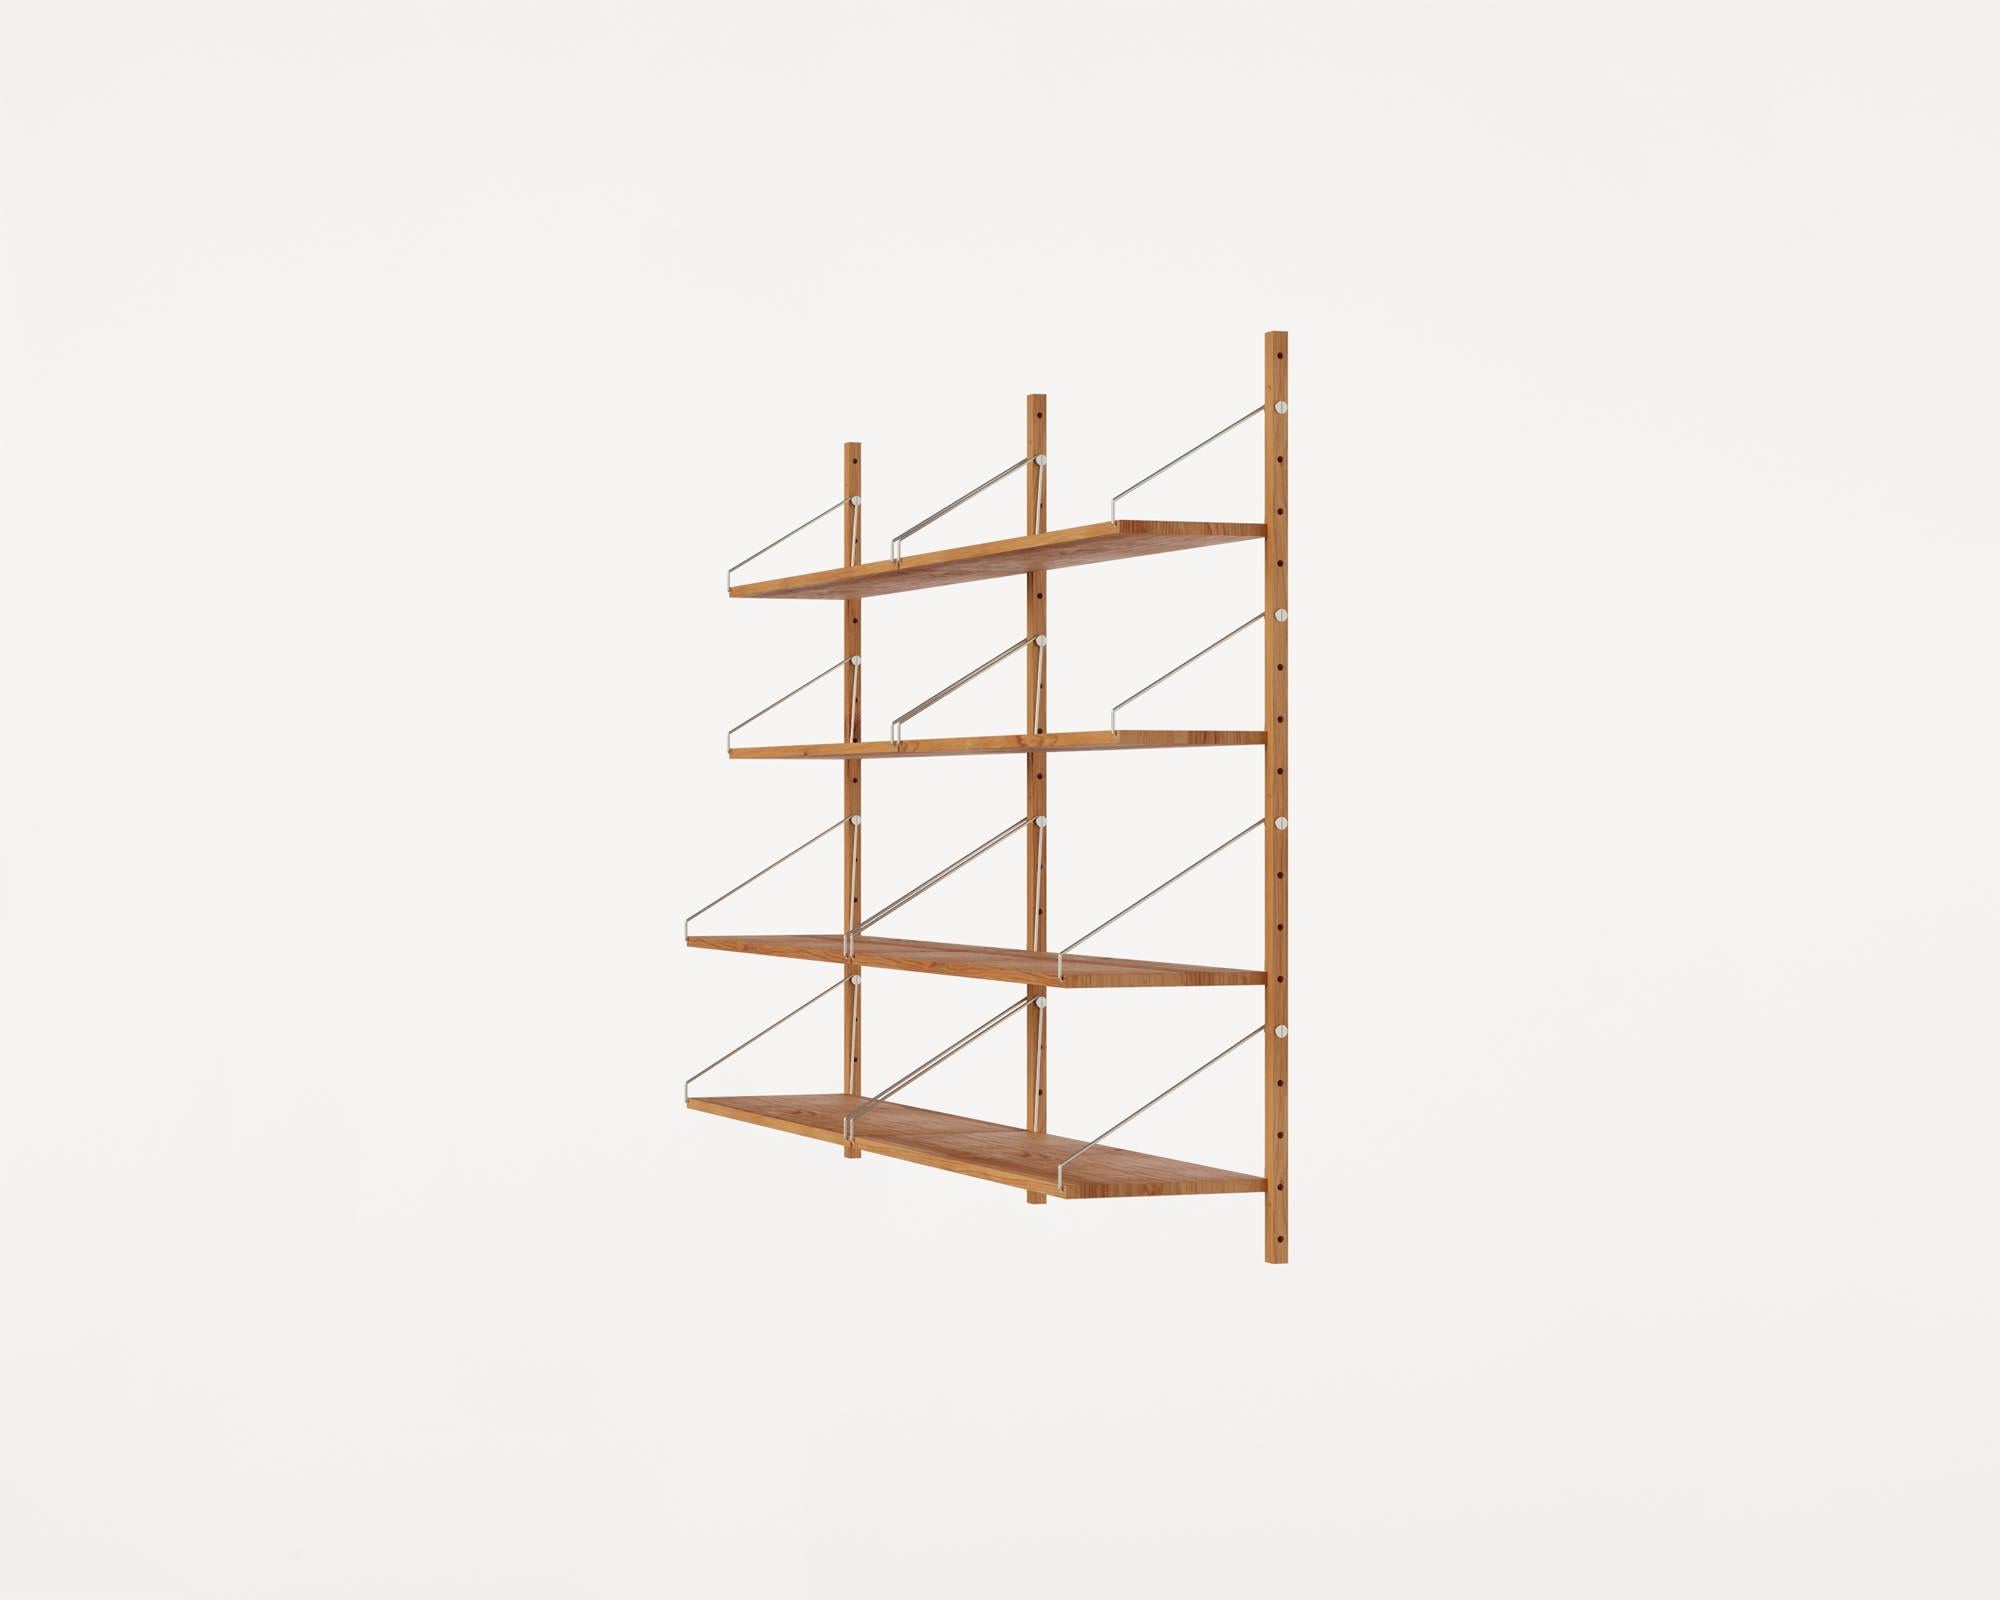 Zeitgenssisches minimalistisches Holz-Wandregal Bibliotheks-Doppelreihiges Regal (Litauisch)